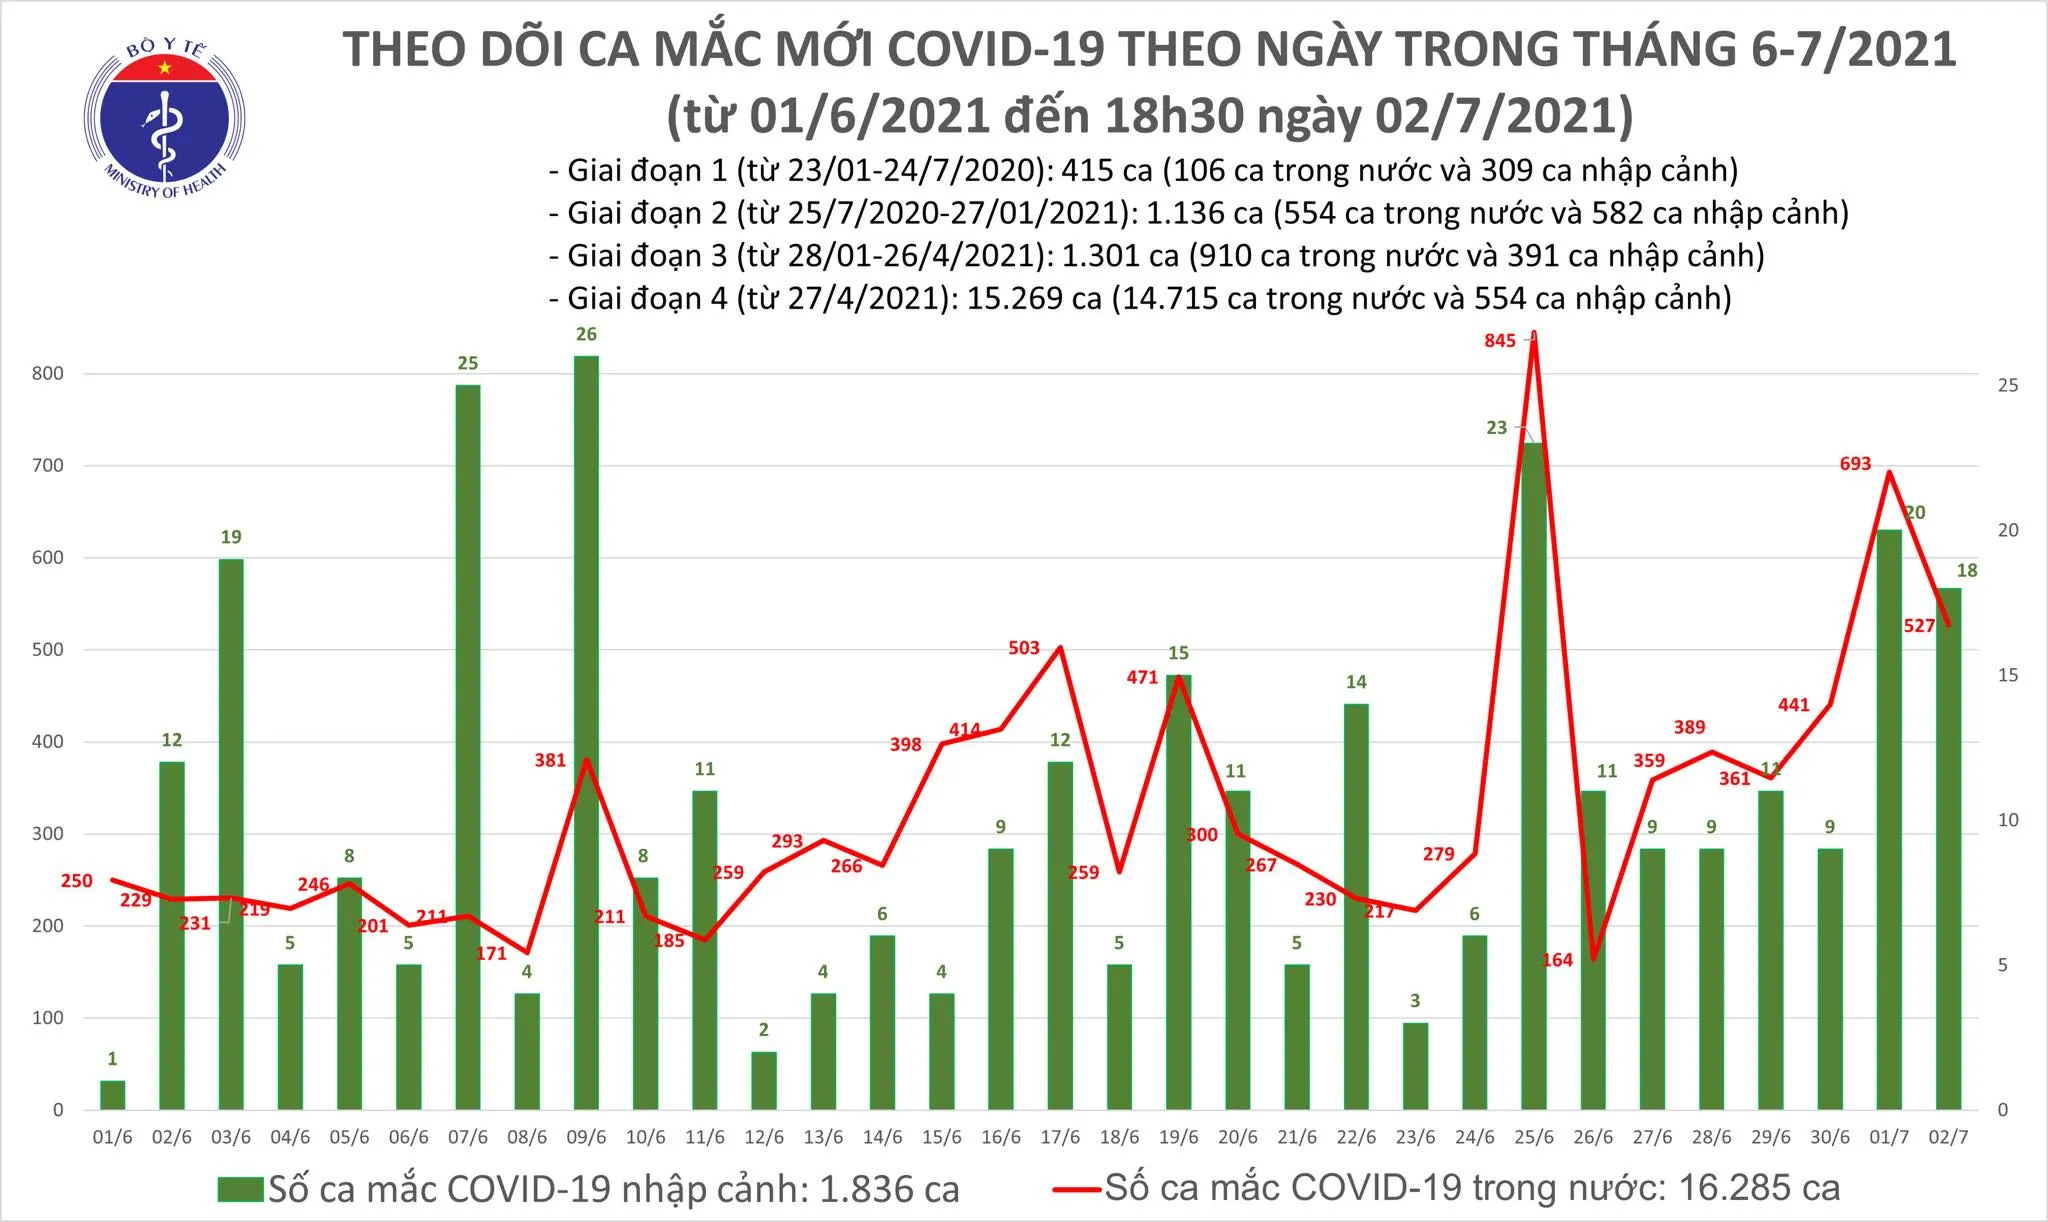 Tối 2/7: Có 219 ca mắc COVID-19, TP Hồ Chí Minh tiếp tục nhiều nhất với 150 ca 1